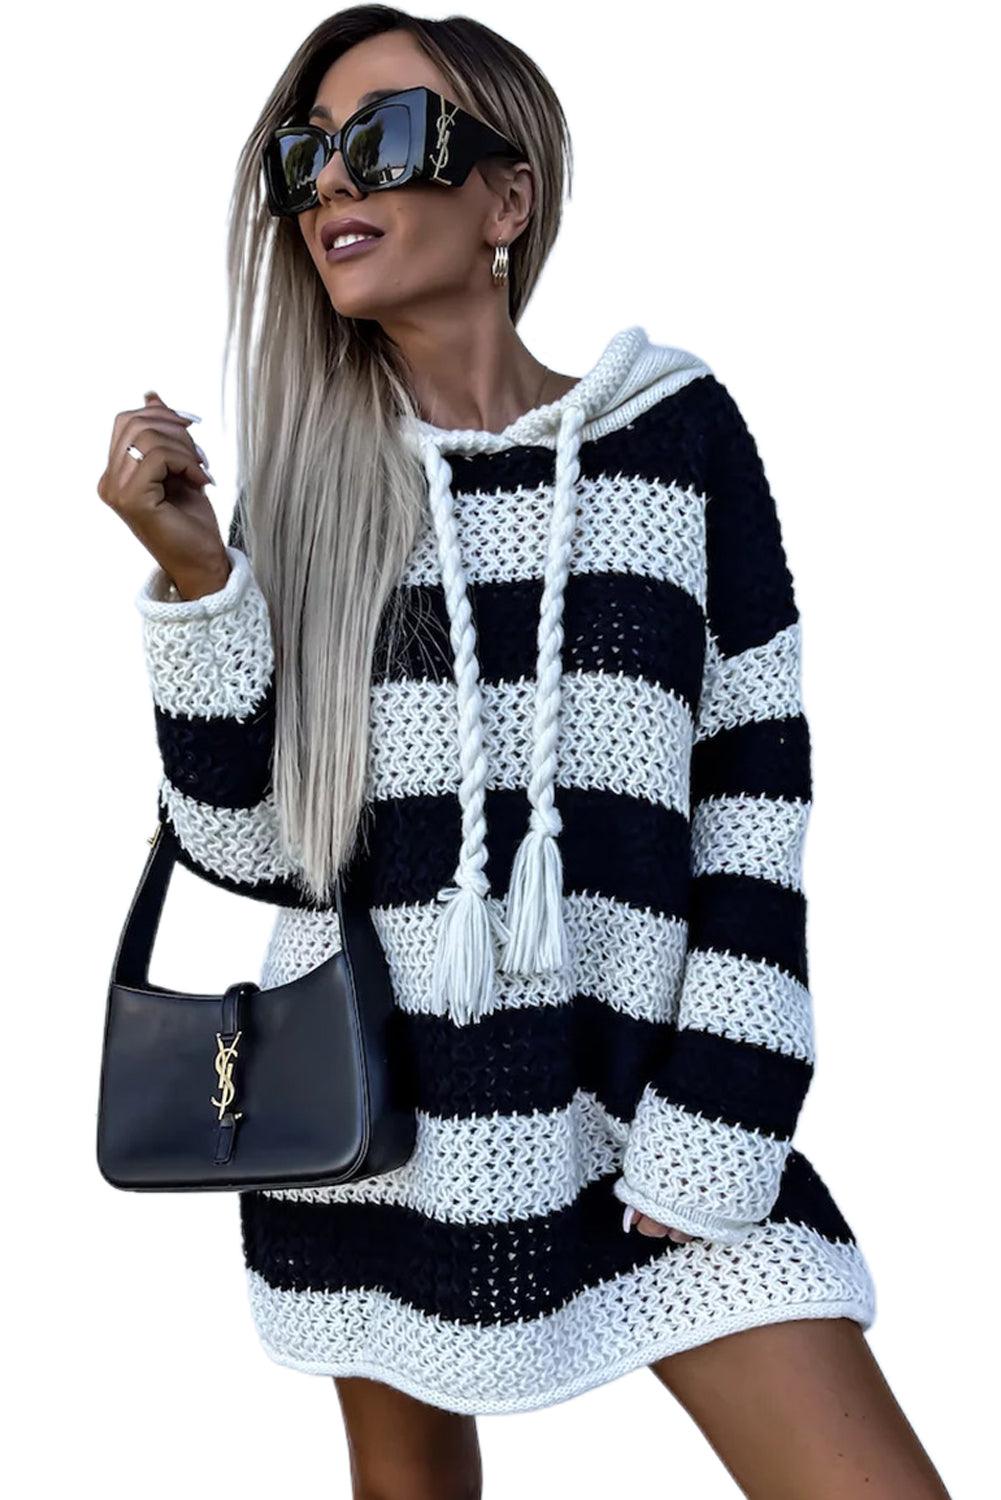 Black Striped Braided Tassel Hooded Sweater Dress - L & M Kee, LLC